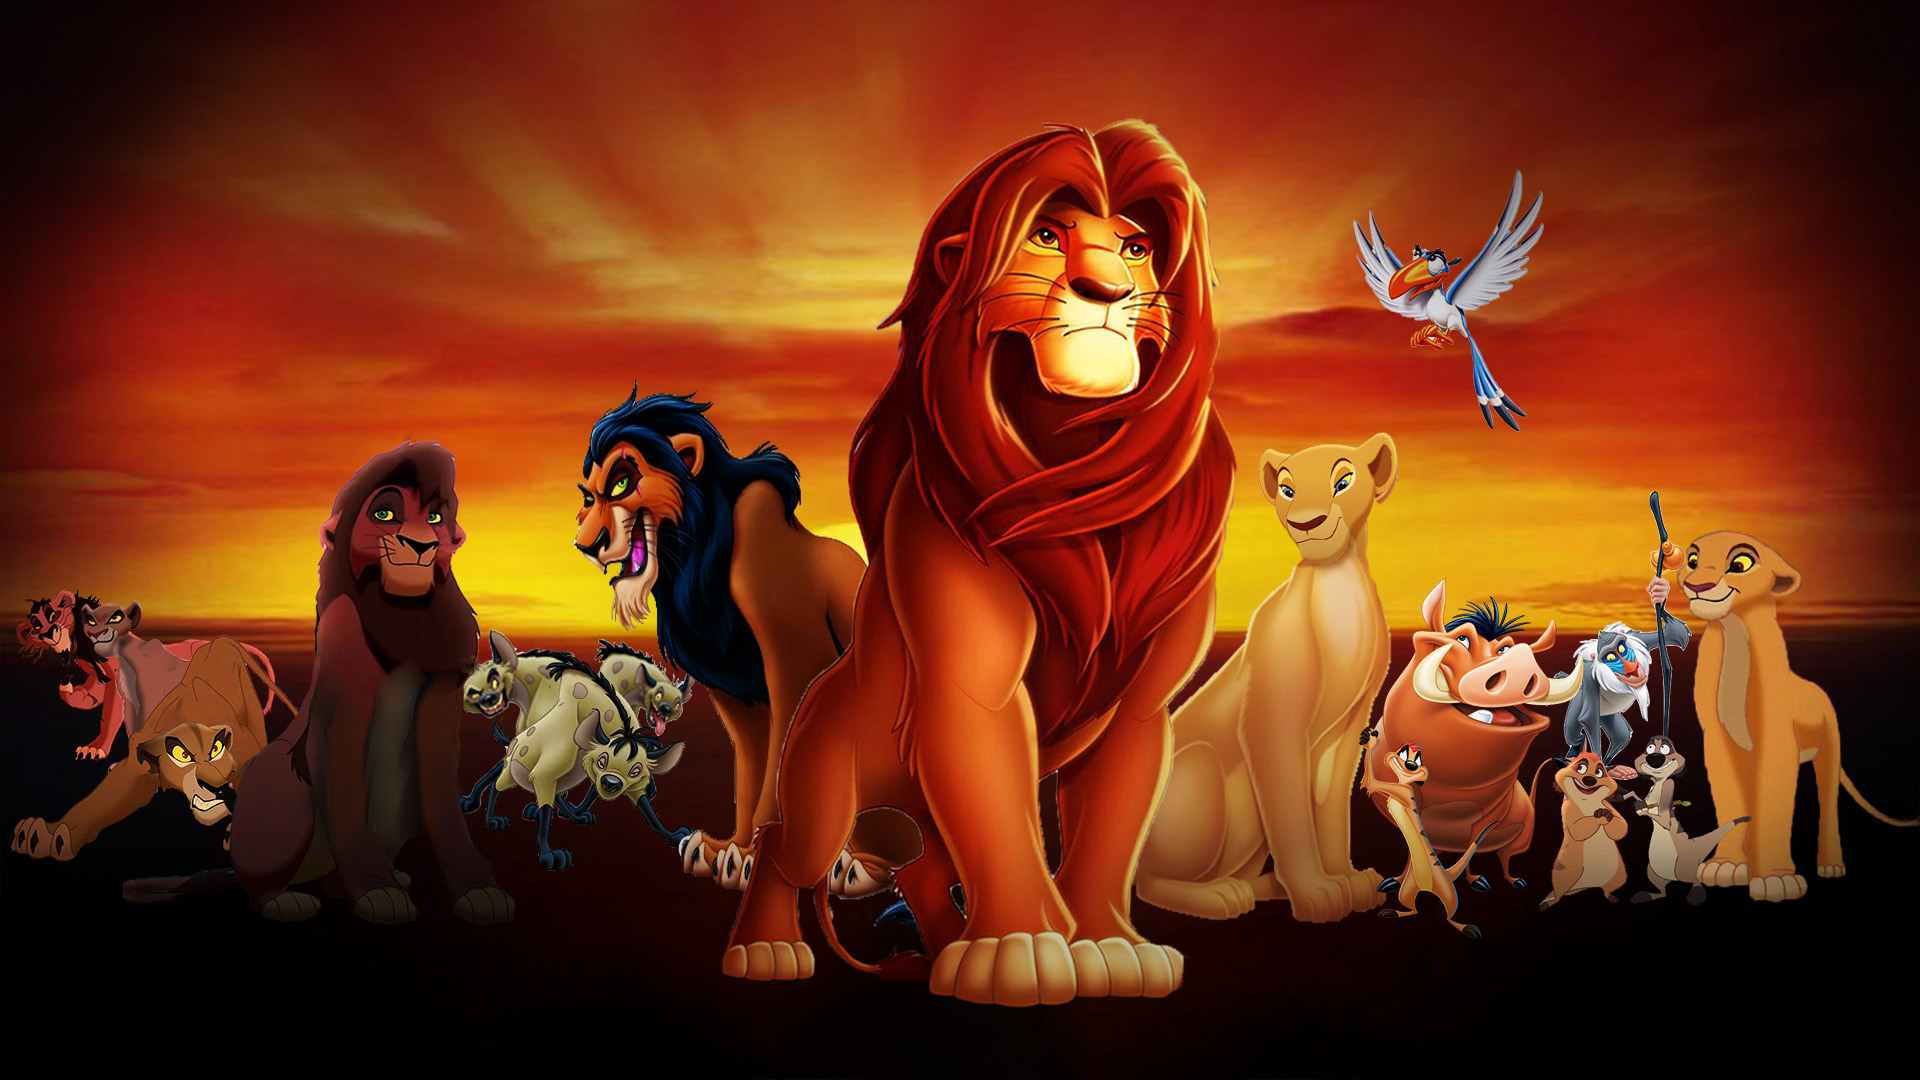 Lvi kral: Kolekce / The Lion King: Collection (1994-2004)(CZ/SK/EN)[1080p][HEVC]  = CSFD 86%